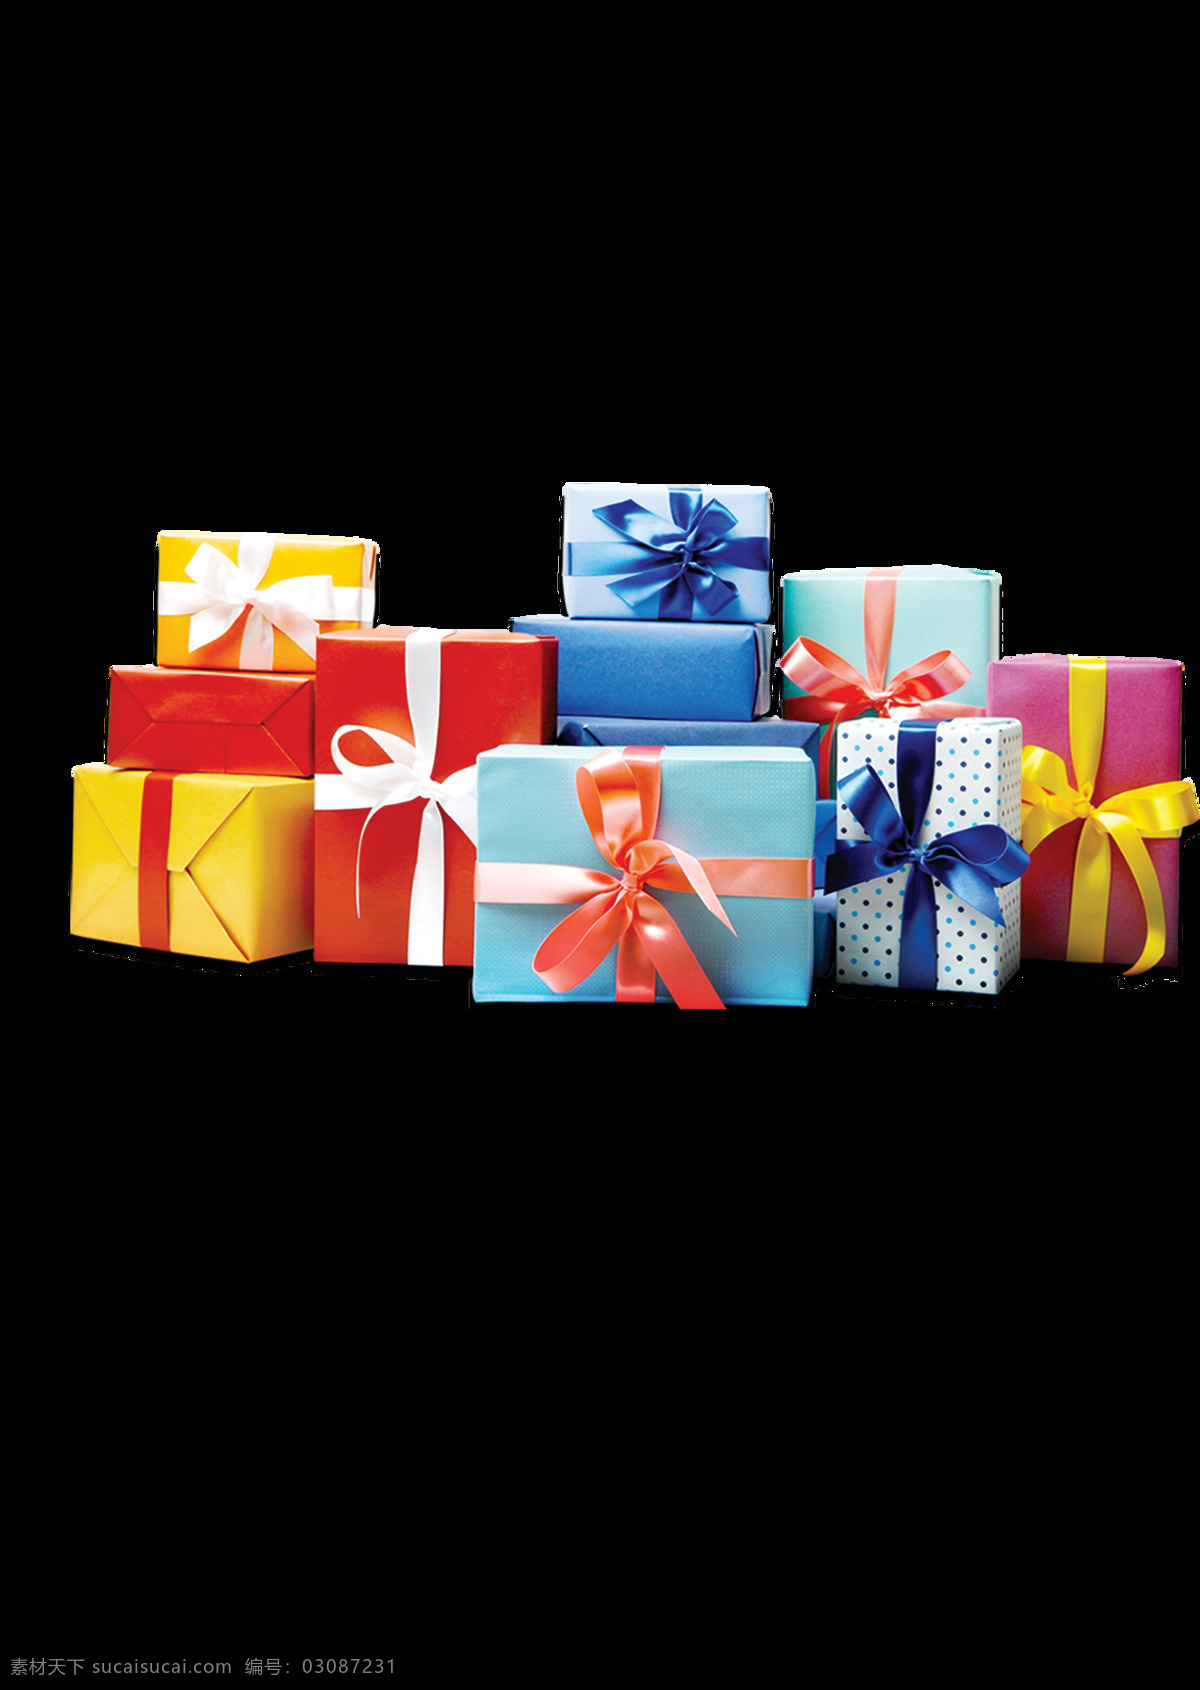 堆 生日 礼物 礼盒 礼盒图片素材 促销海报元素 打开的礼盒 礼品袋 节日丝带 节日 设计素材 元素素材 其他素材 一堆 生日礼物 节日素材礼品